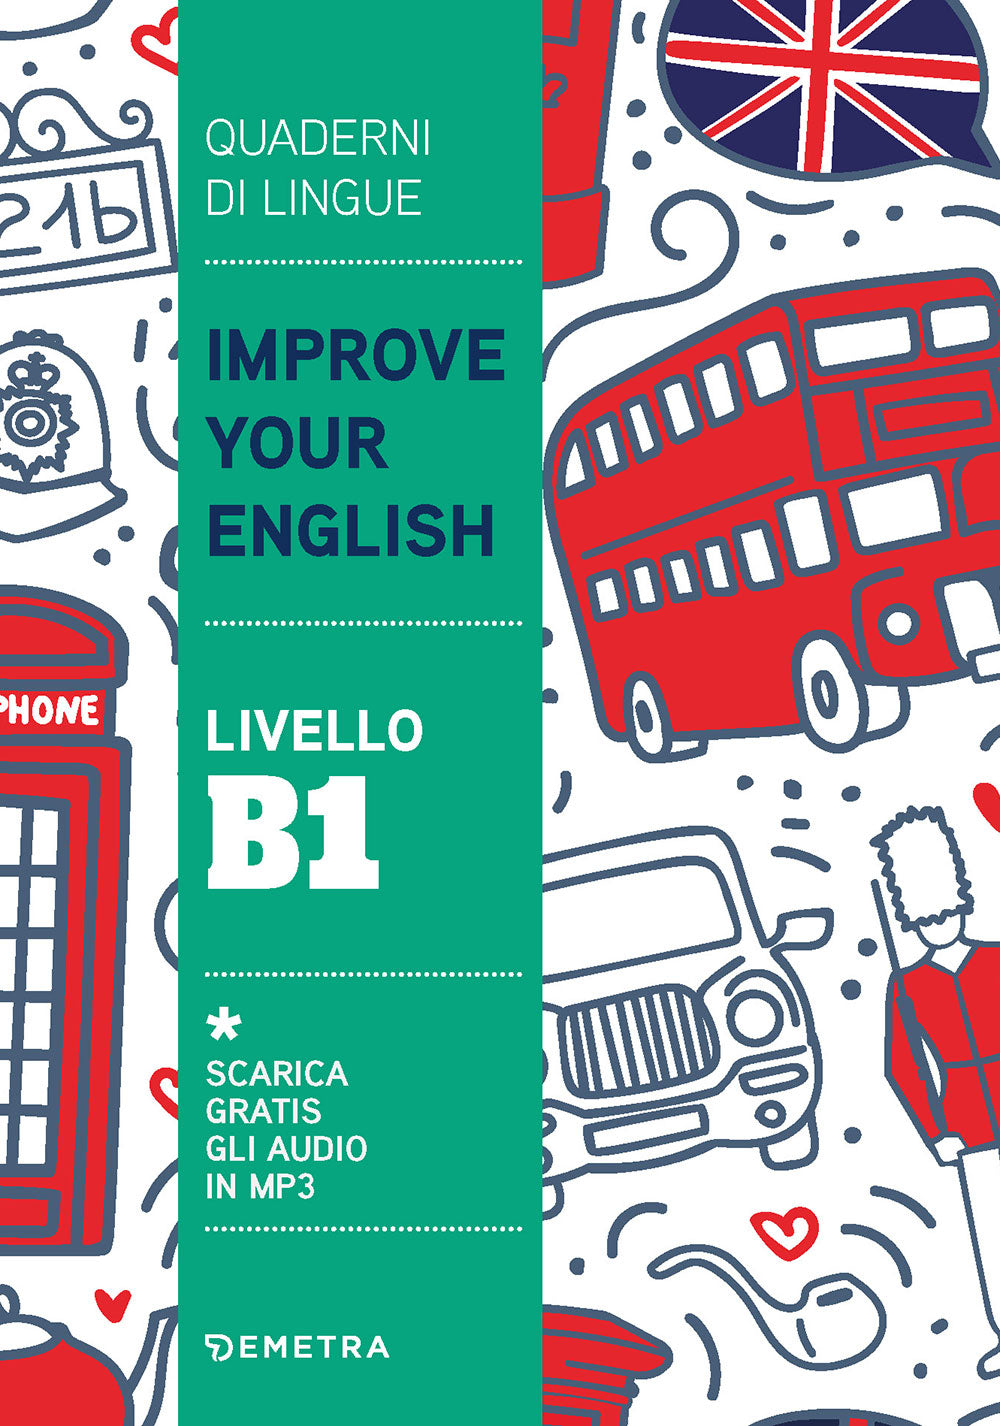 Improve Your English livello B1::Scarica gratis gli audio in MP3